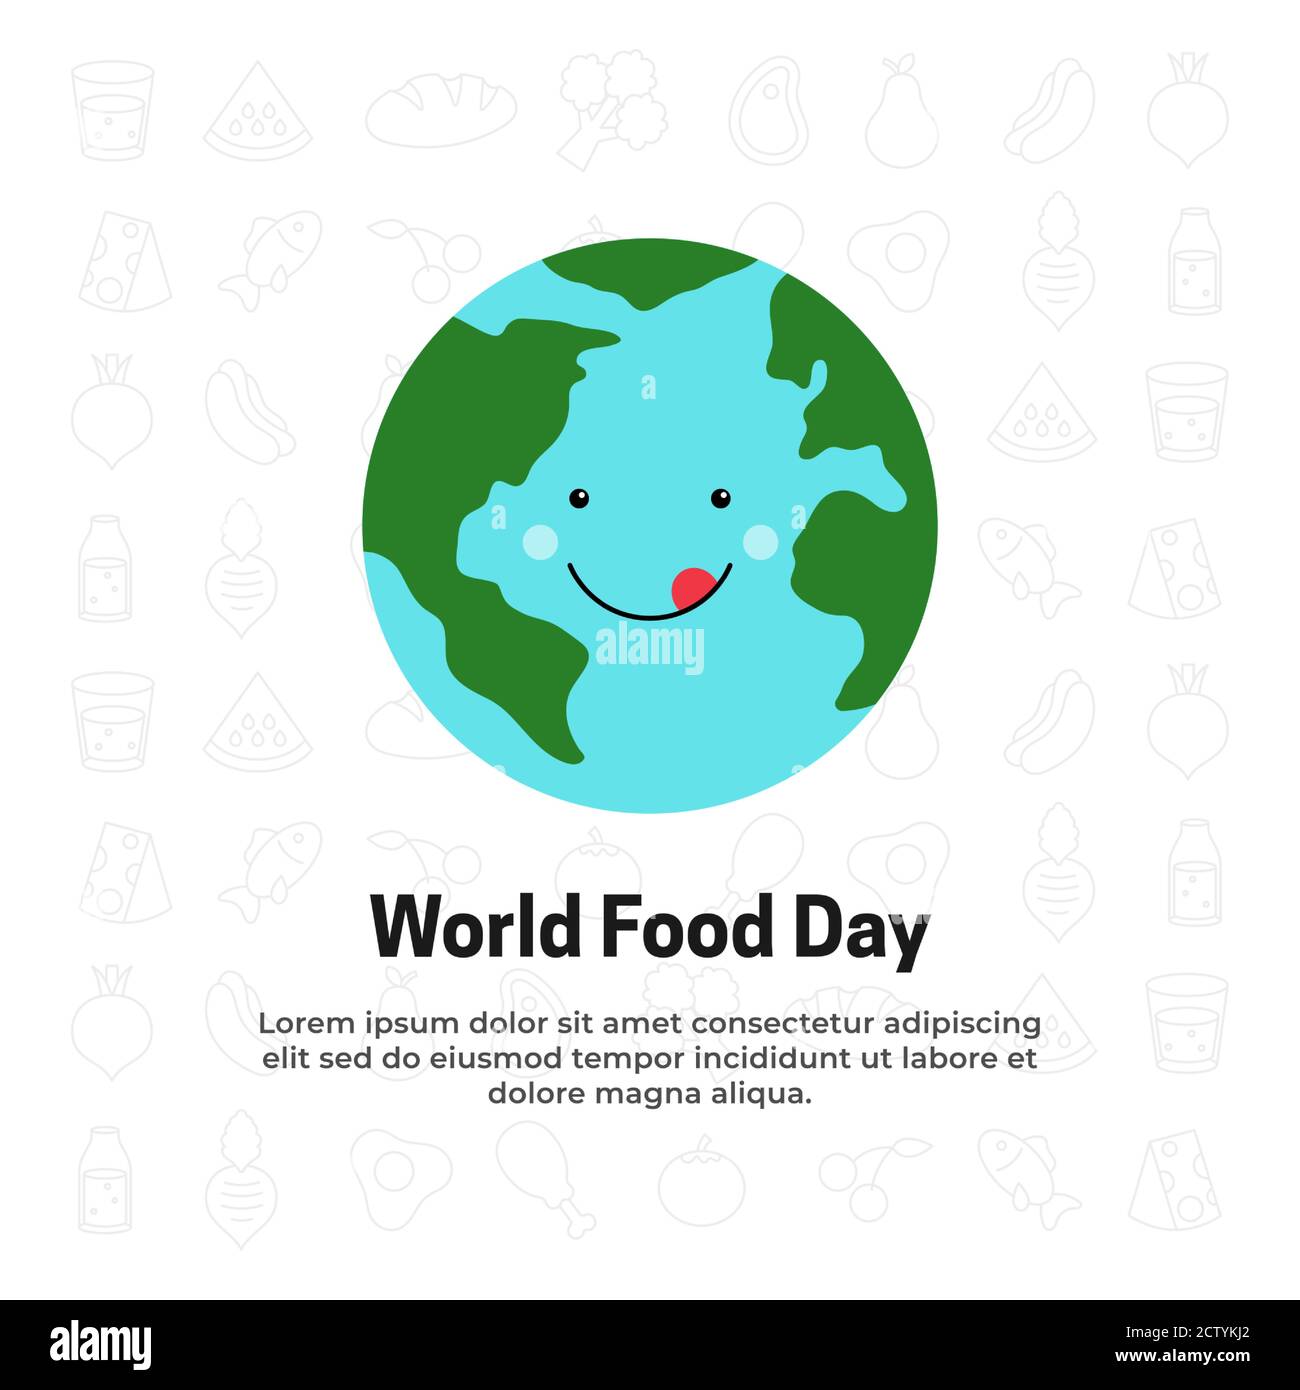 Lustige niedliche Erde Cartoon Gesicht mit köstlichen lecker lecker Lächeln  Vektor Illustration für World Food Day Feier Poster Hintergrund Konzept  Design Stock-Vektorgrafik - Alamy